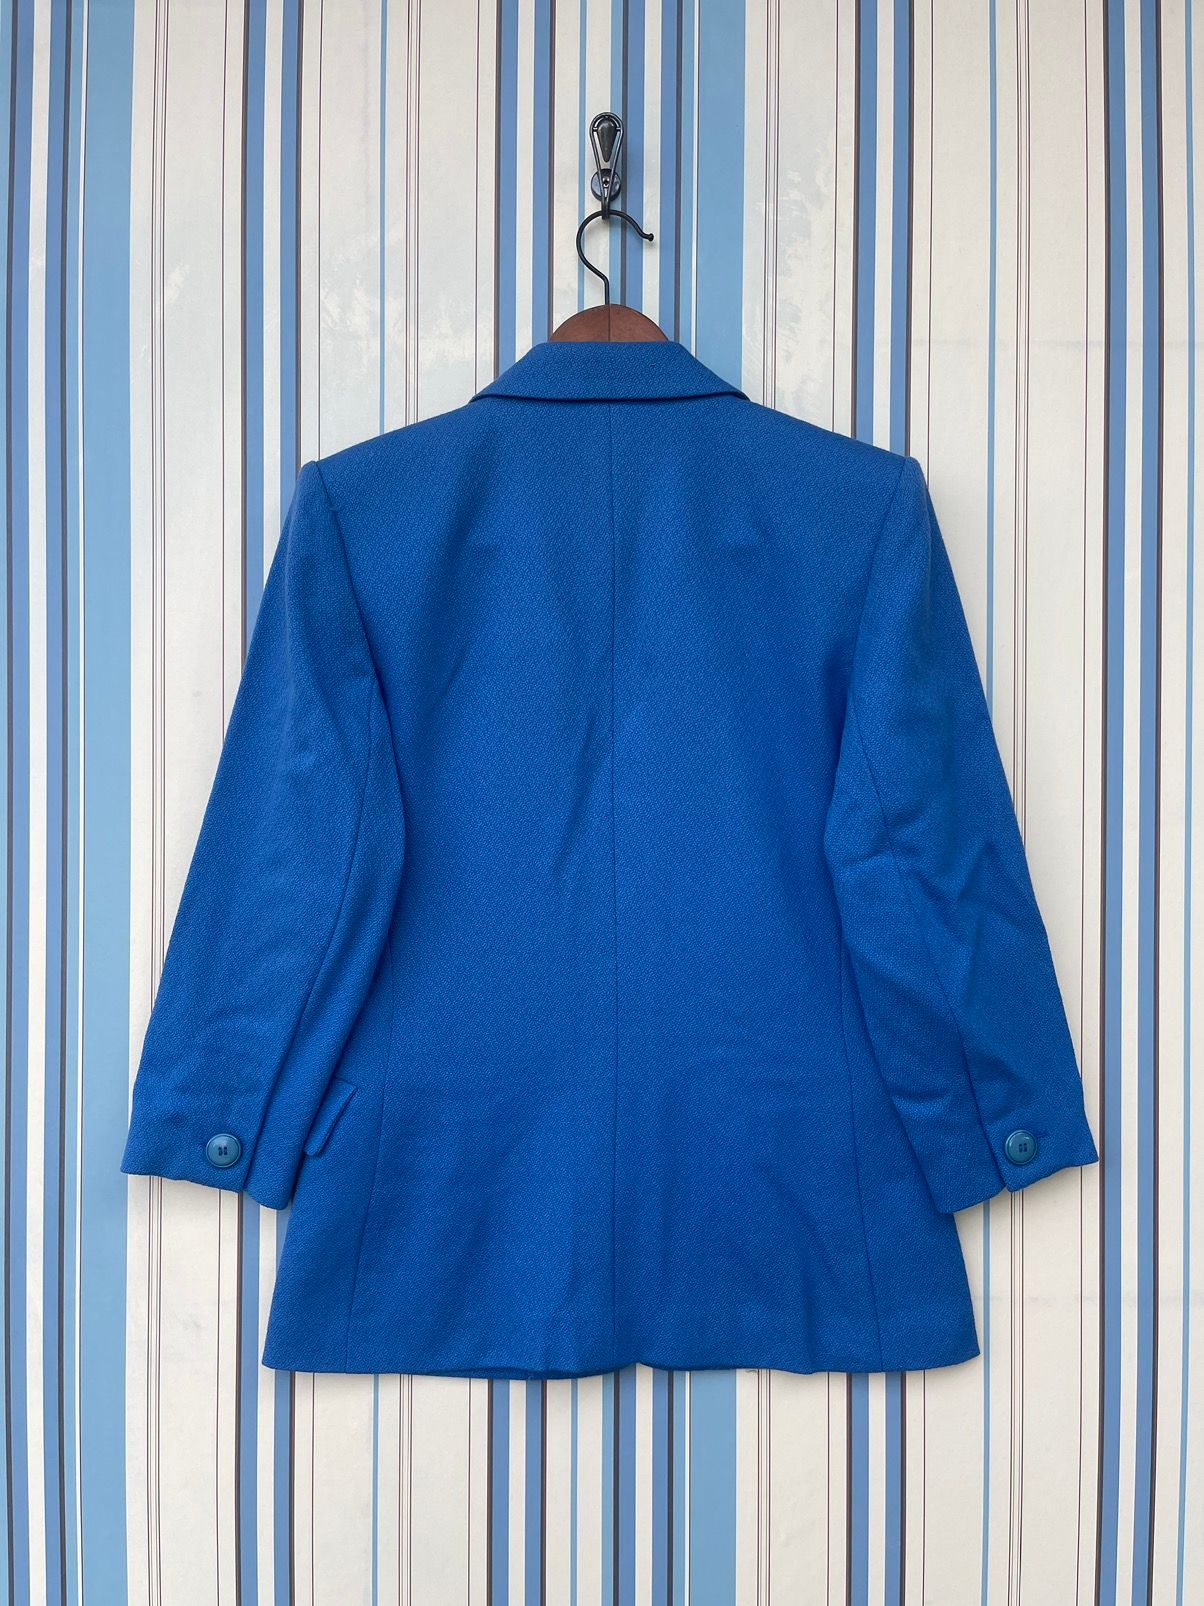 Vintage - Yves Saint Laurent Blazer Jacket For Women’s - 2